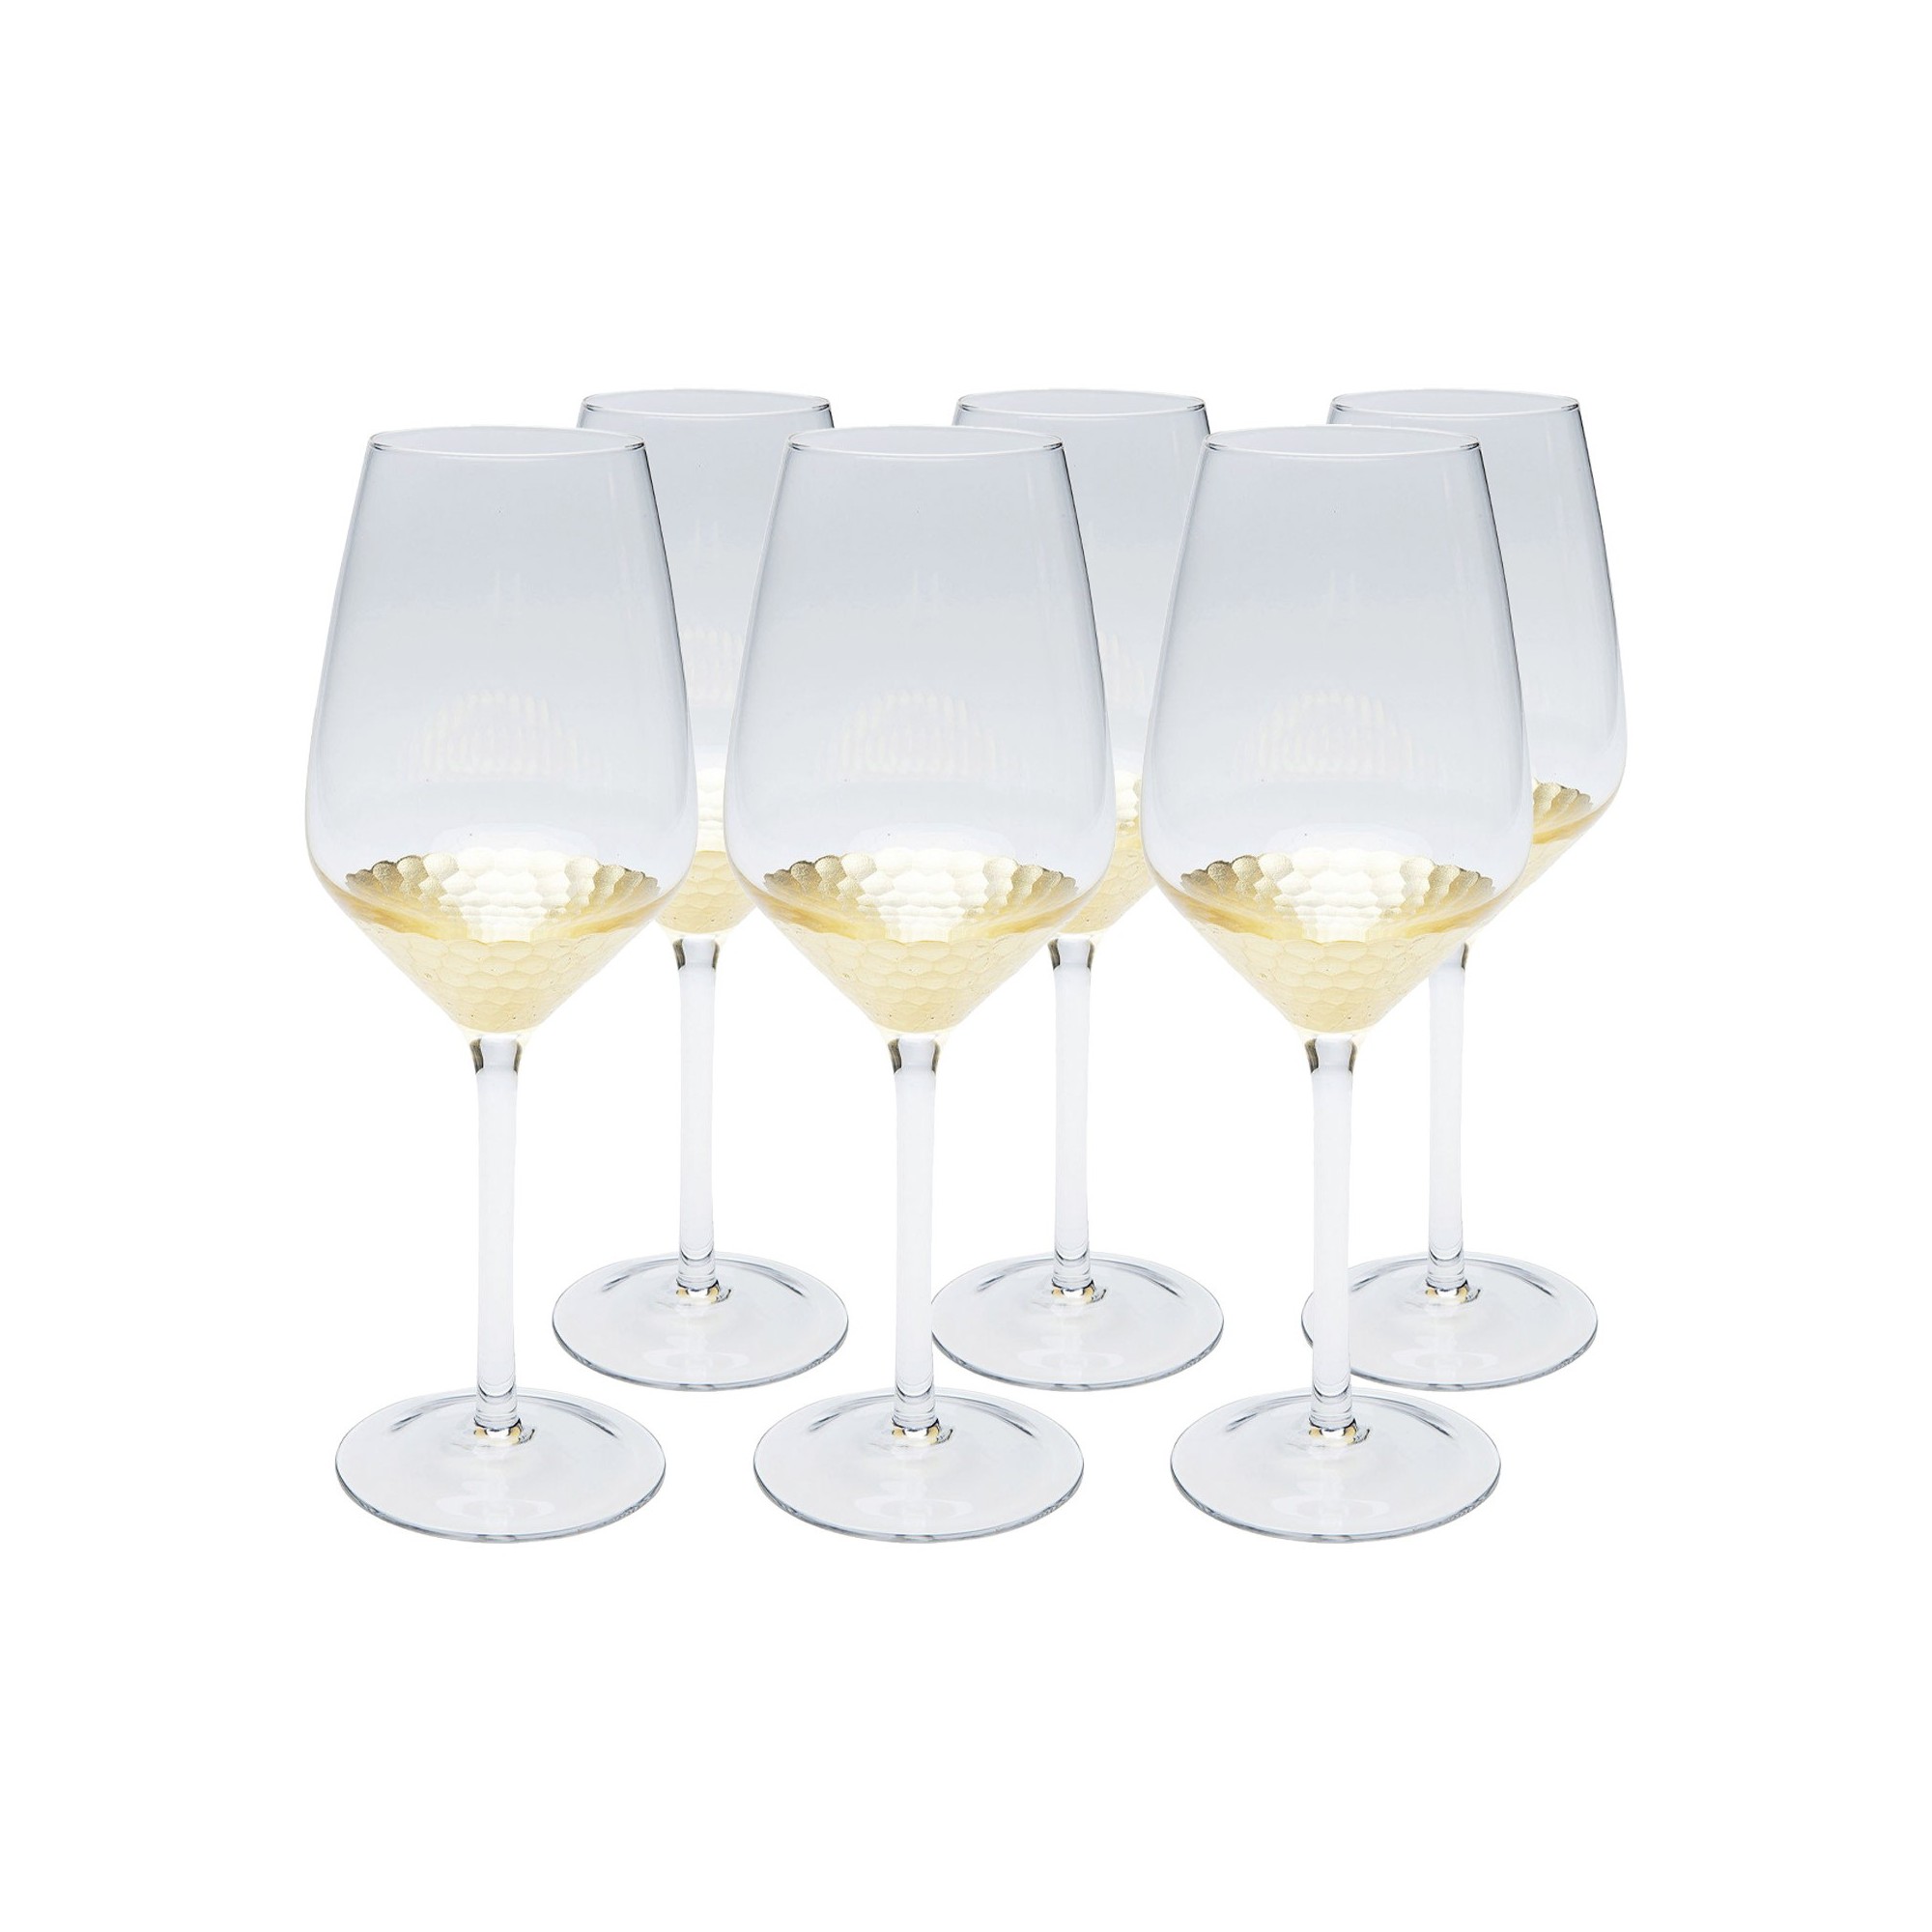 White Wine Glass Gobi Kare Design